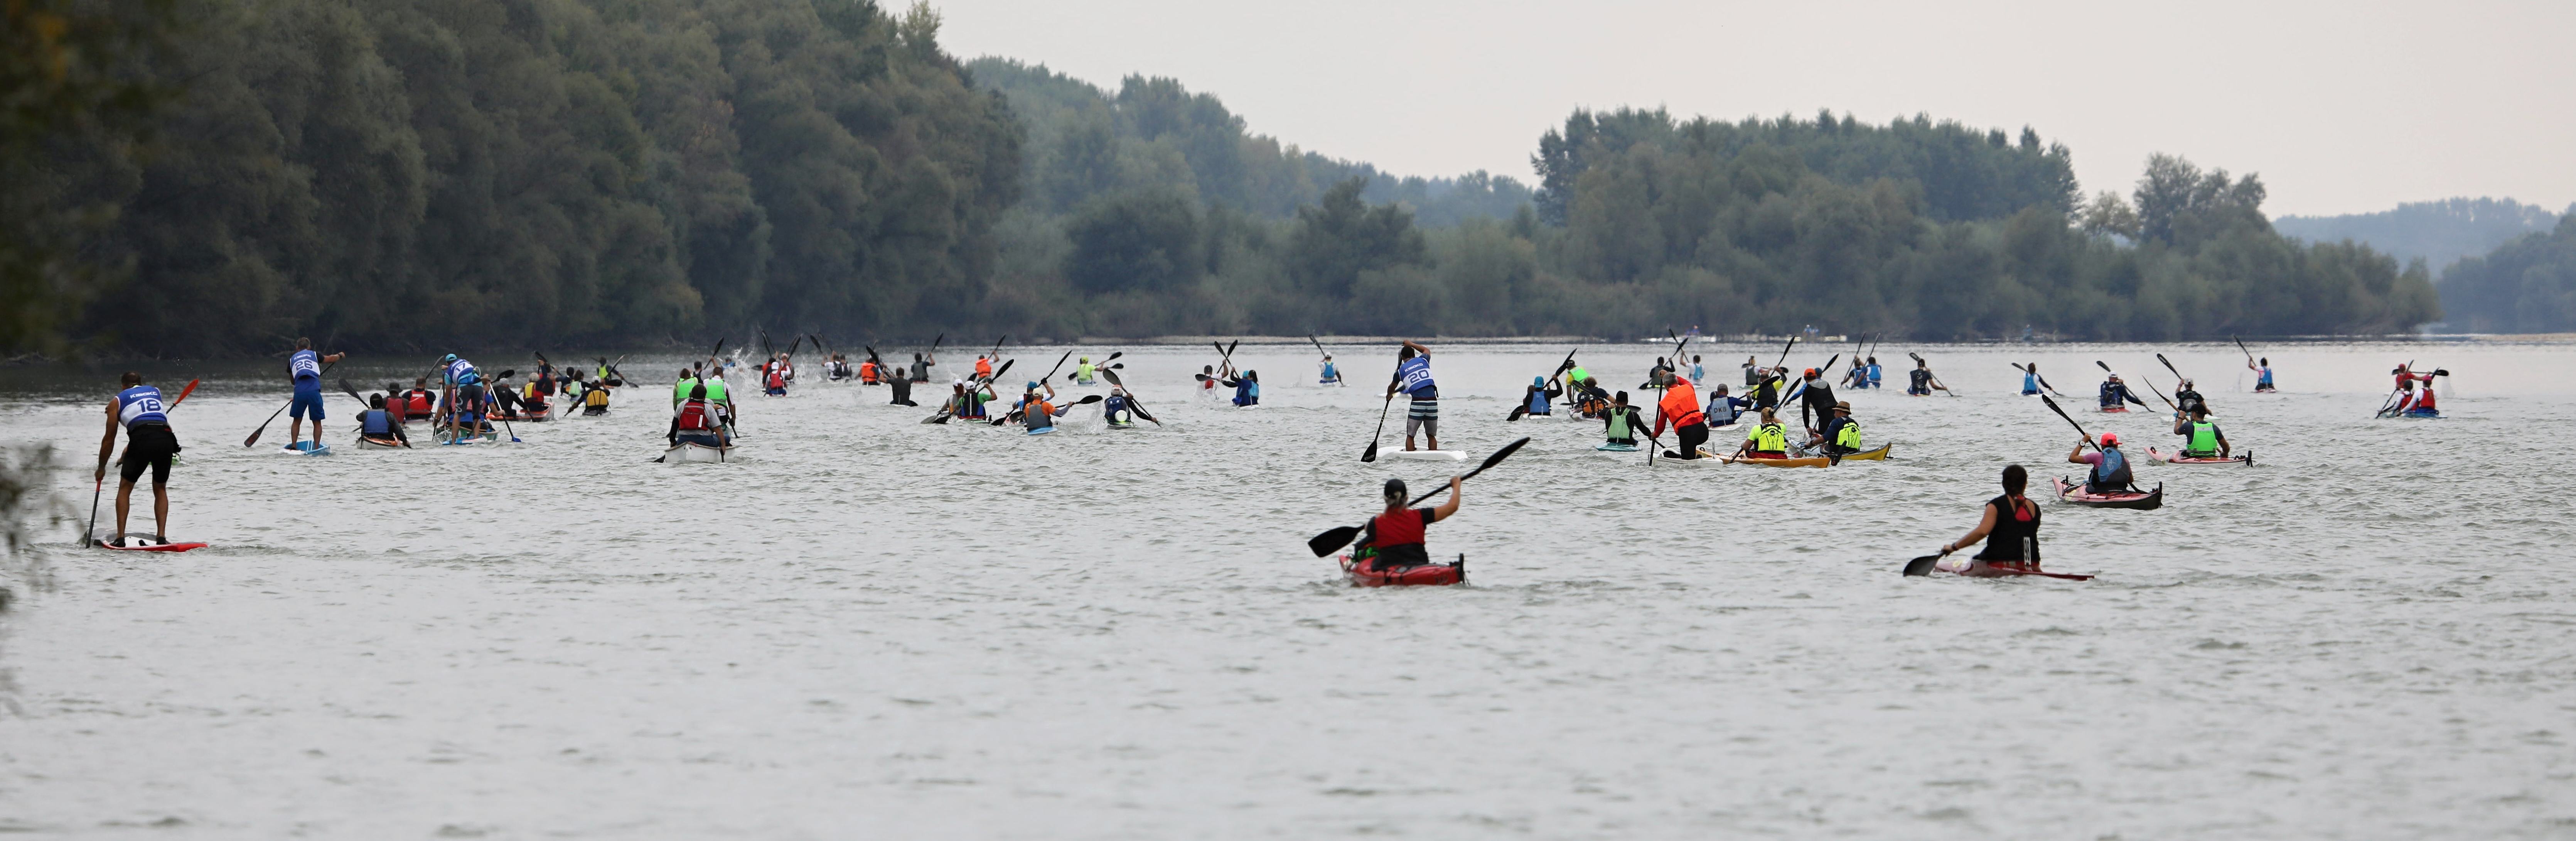 Dunajský vodácky maratón má za sebou veľmi úspešný 31. ročník 